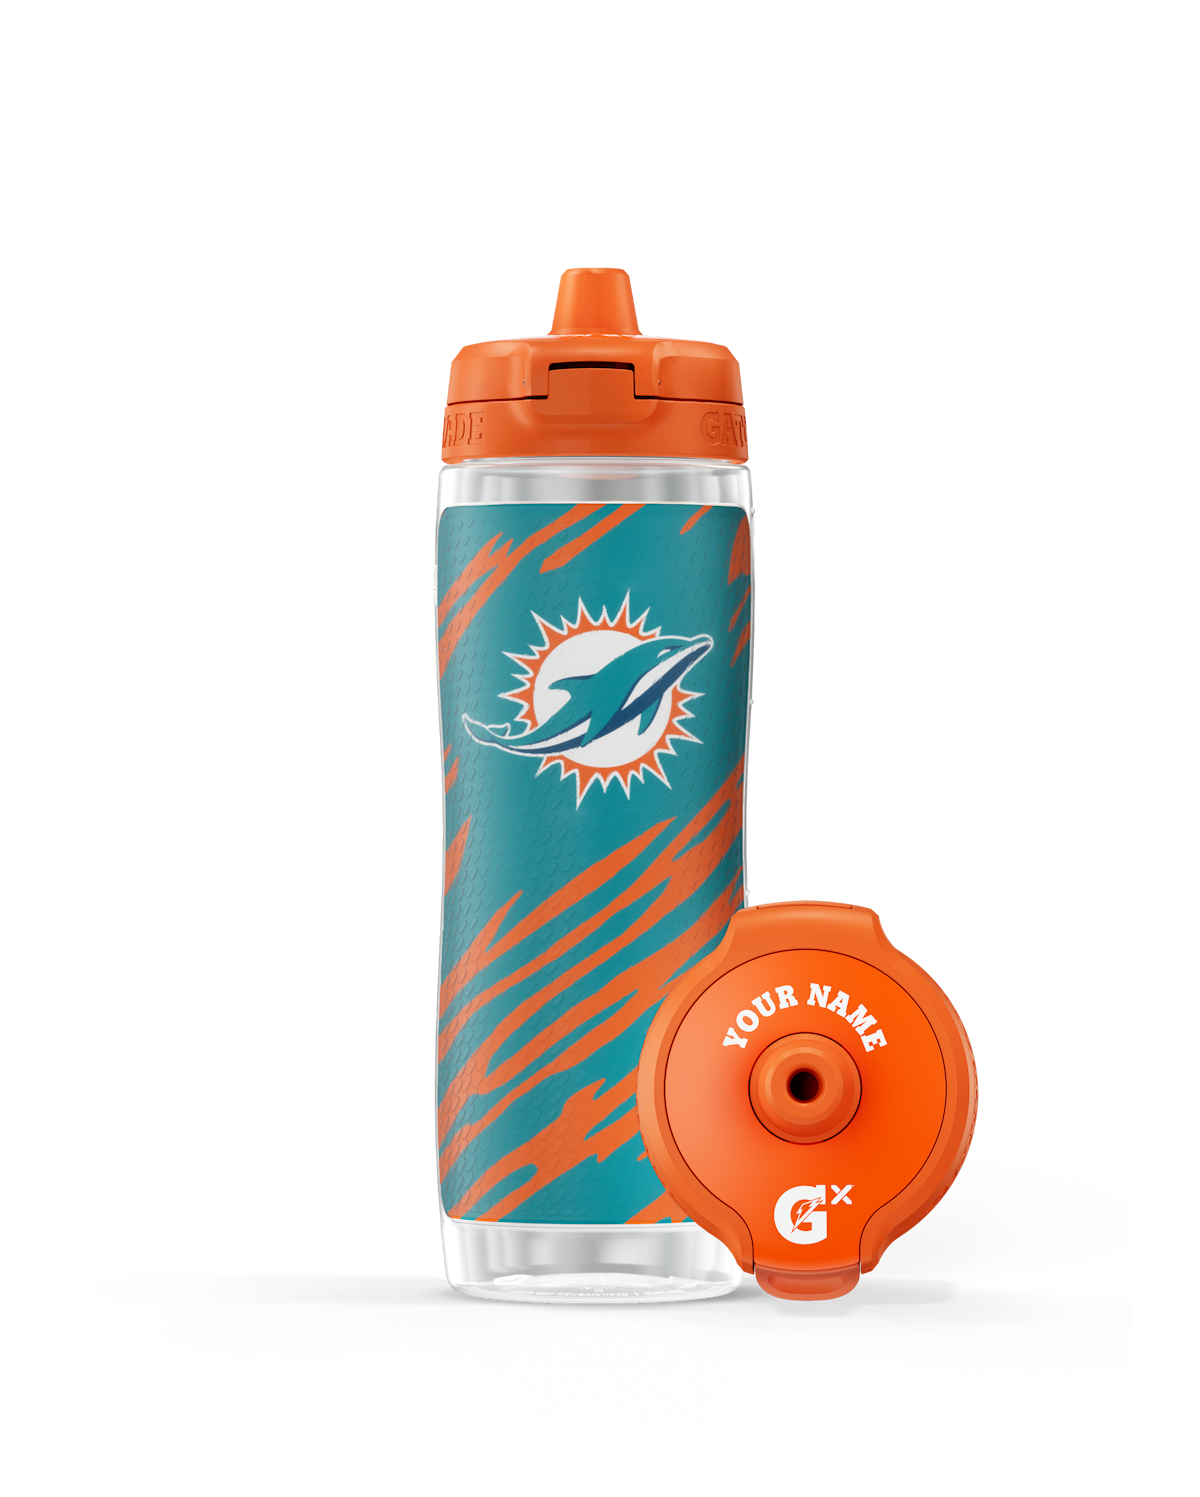 Official NFL Philadelphia Eagles Insulated Shaker Bottle